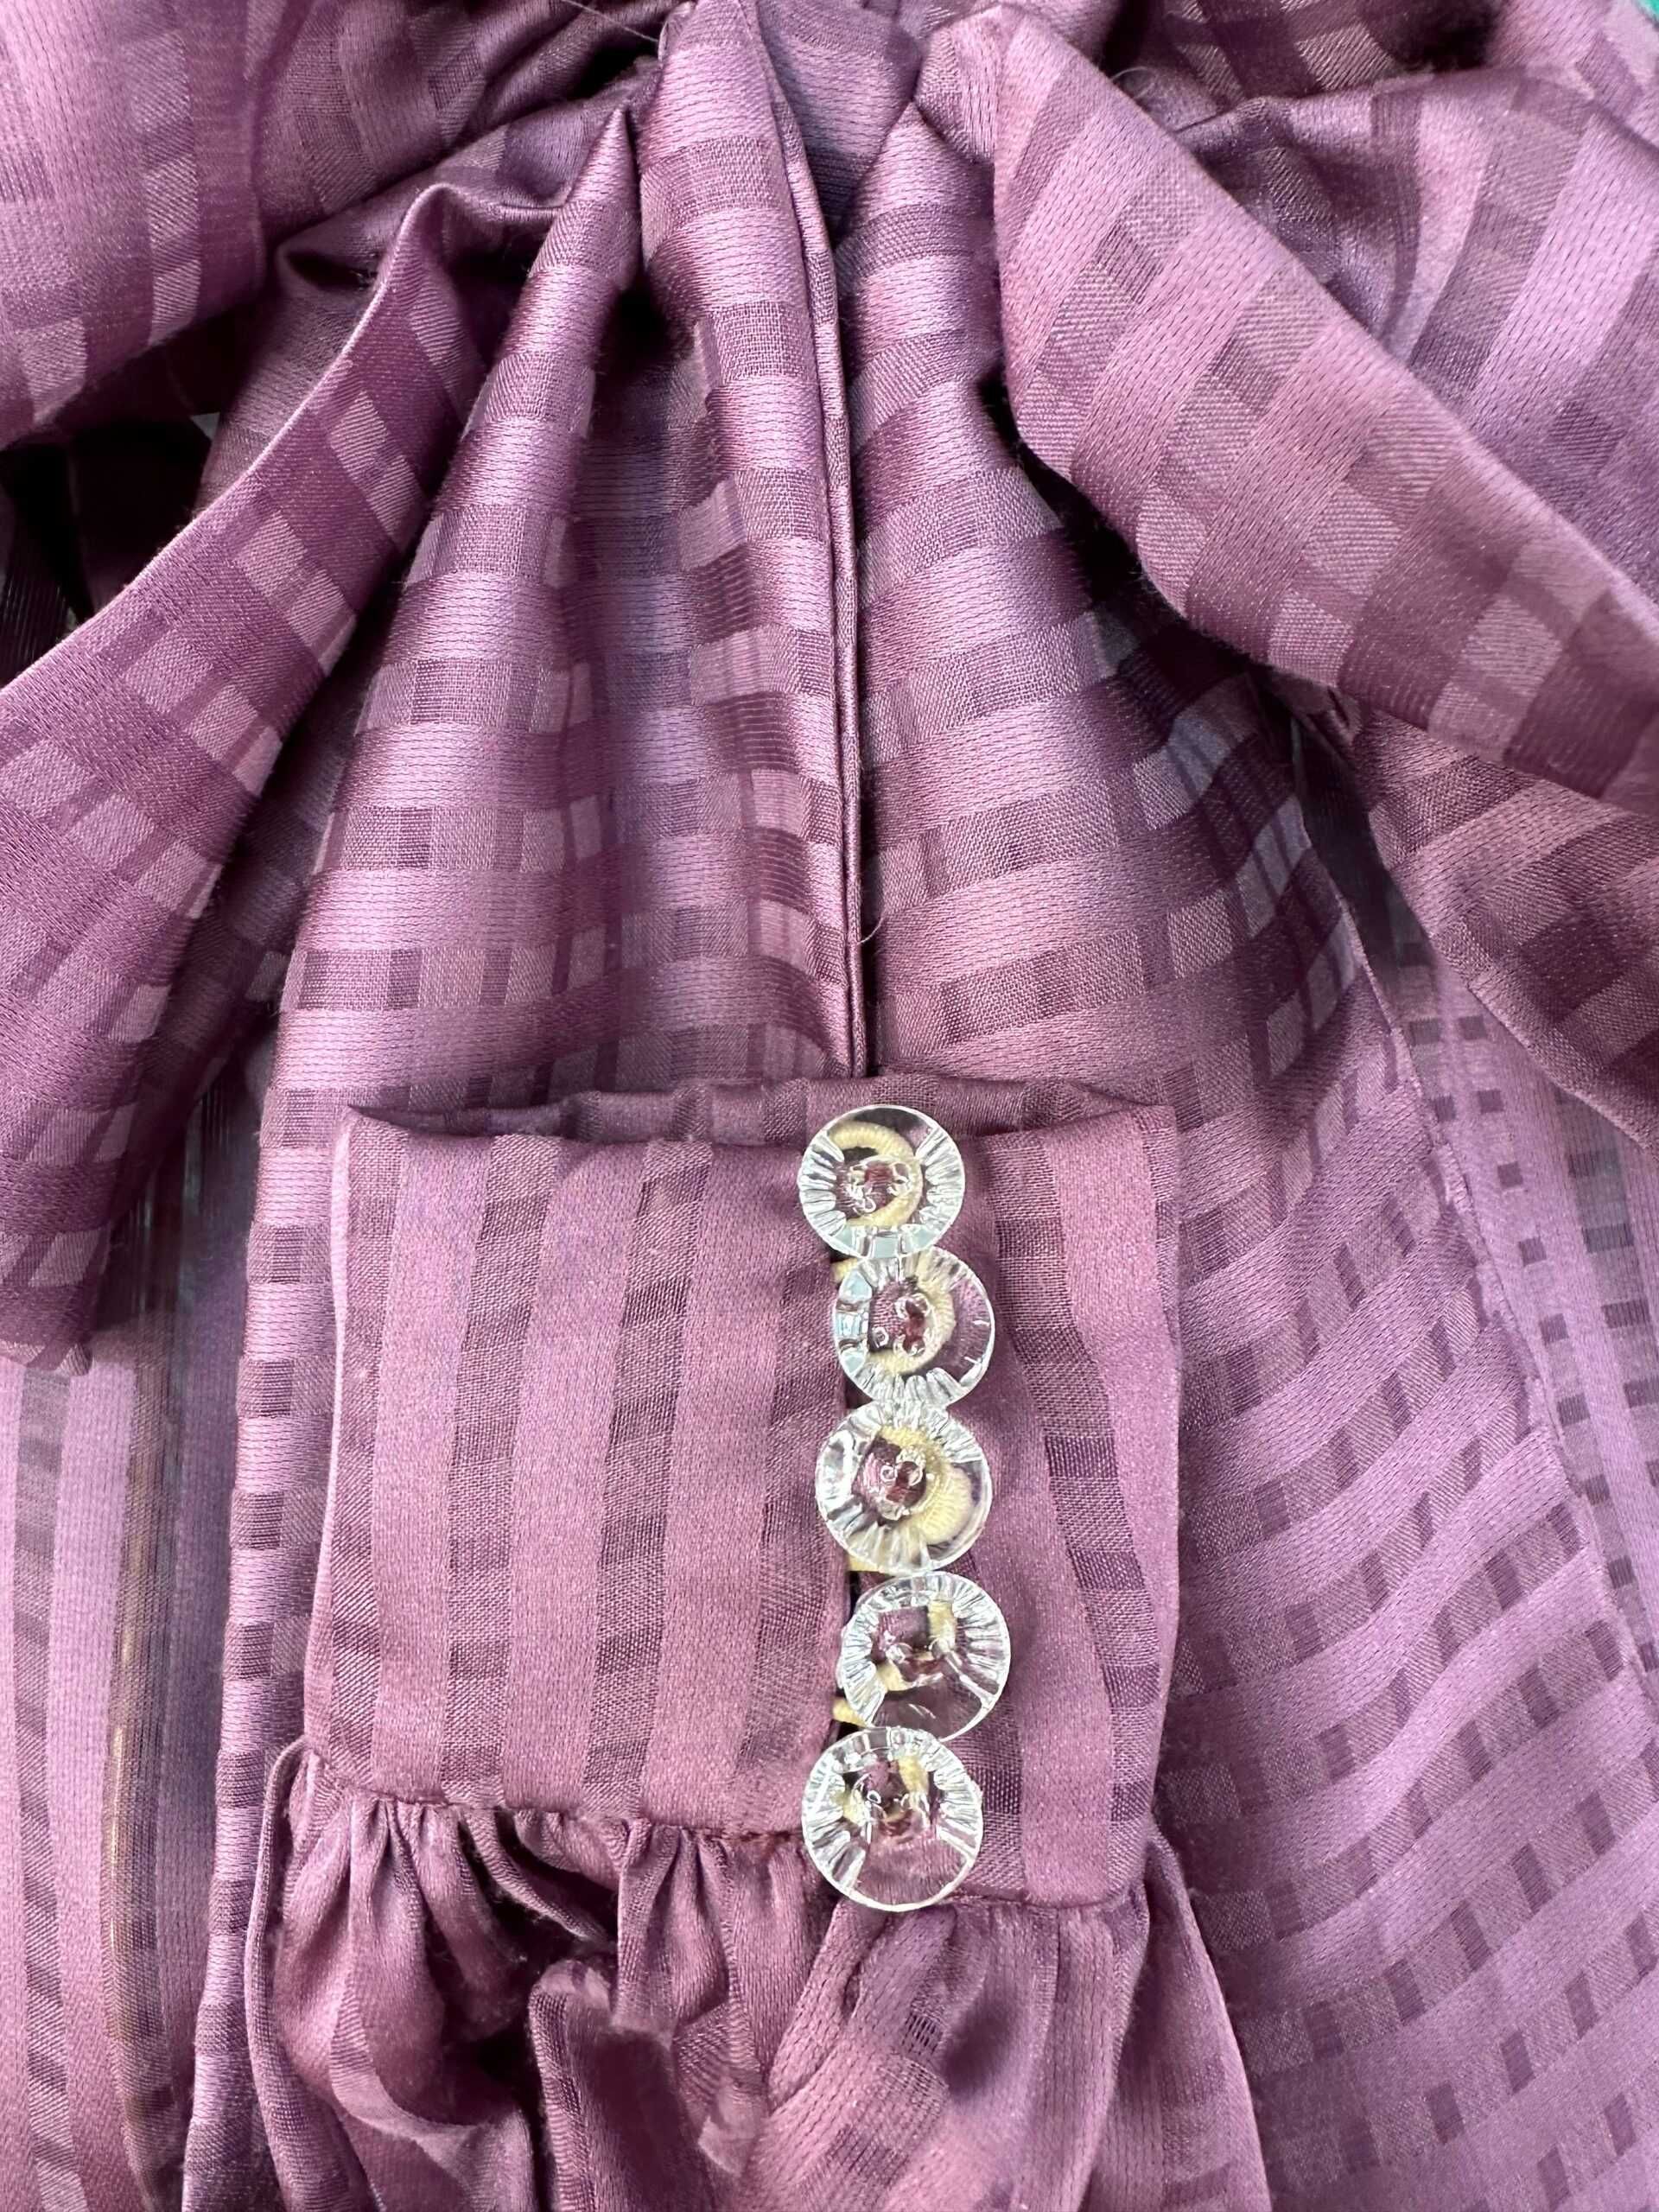 Camașă din mătase transparentă, marimea S, mov cu nasturi transparenți